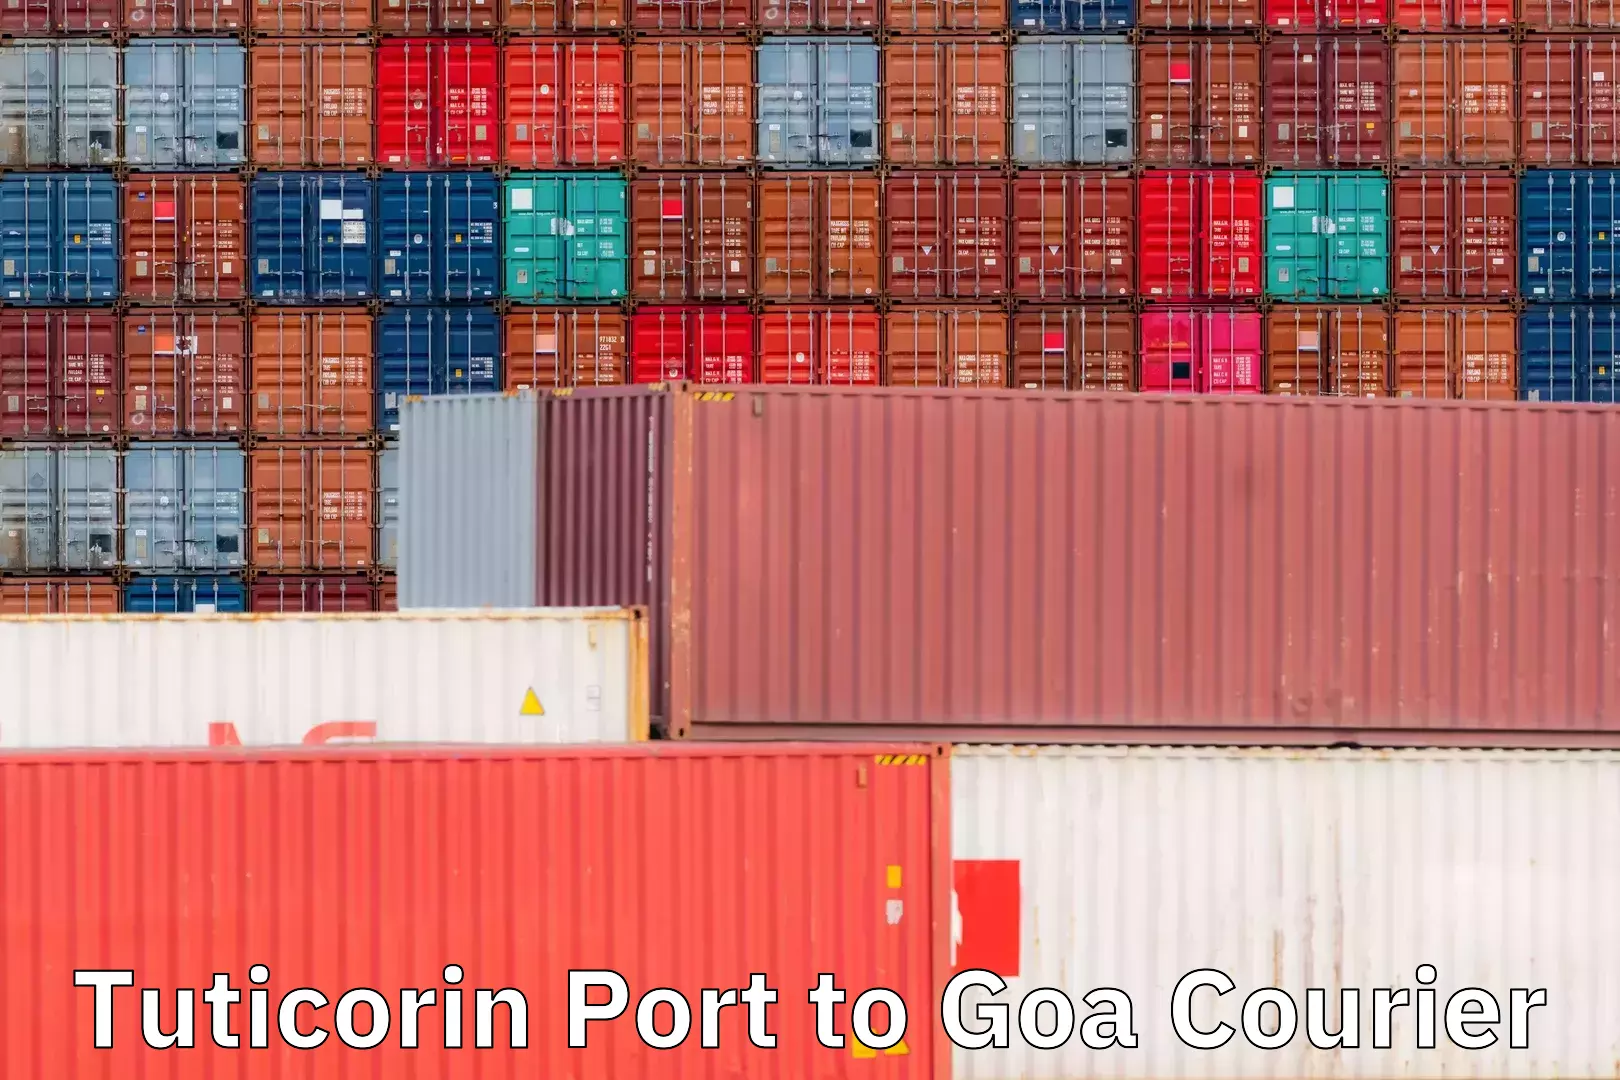 Domestic courier in Tuticorin Port to Goa